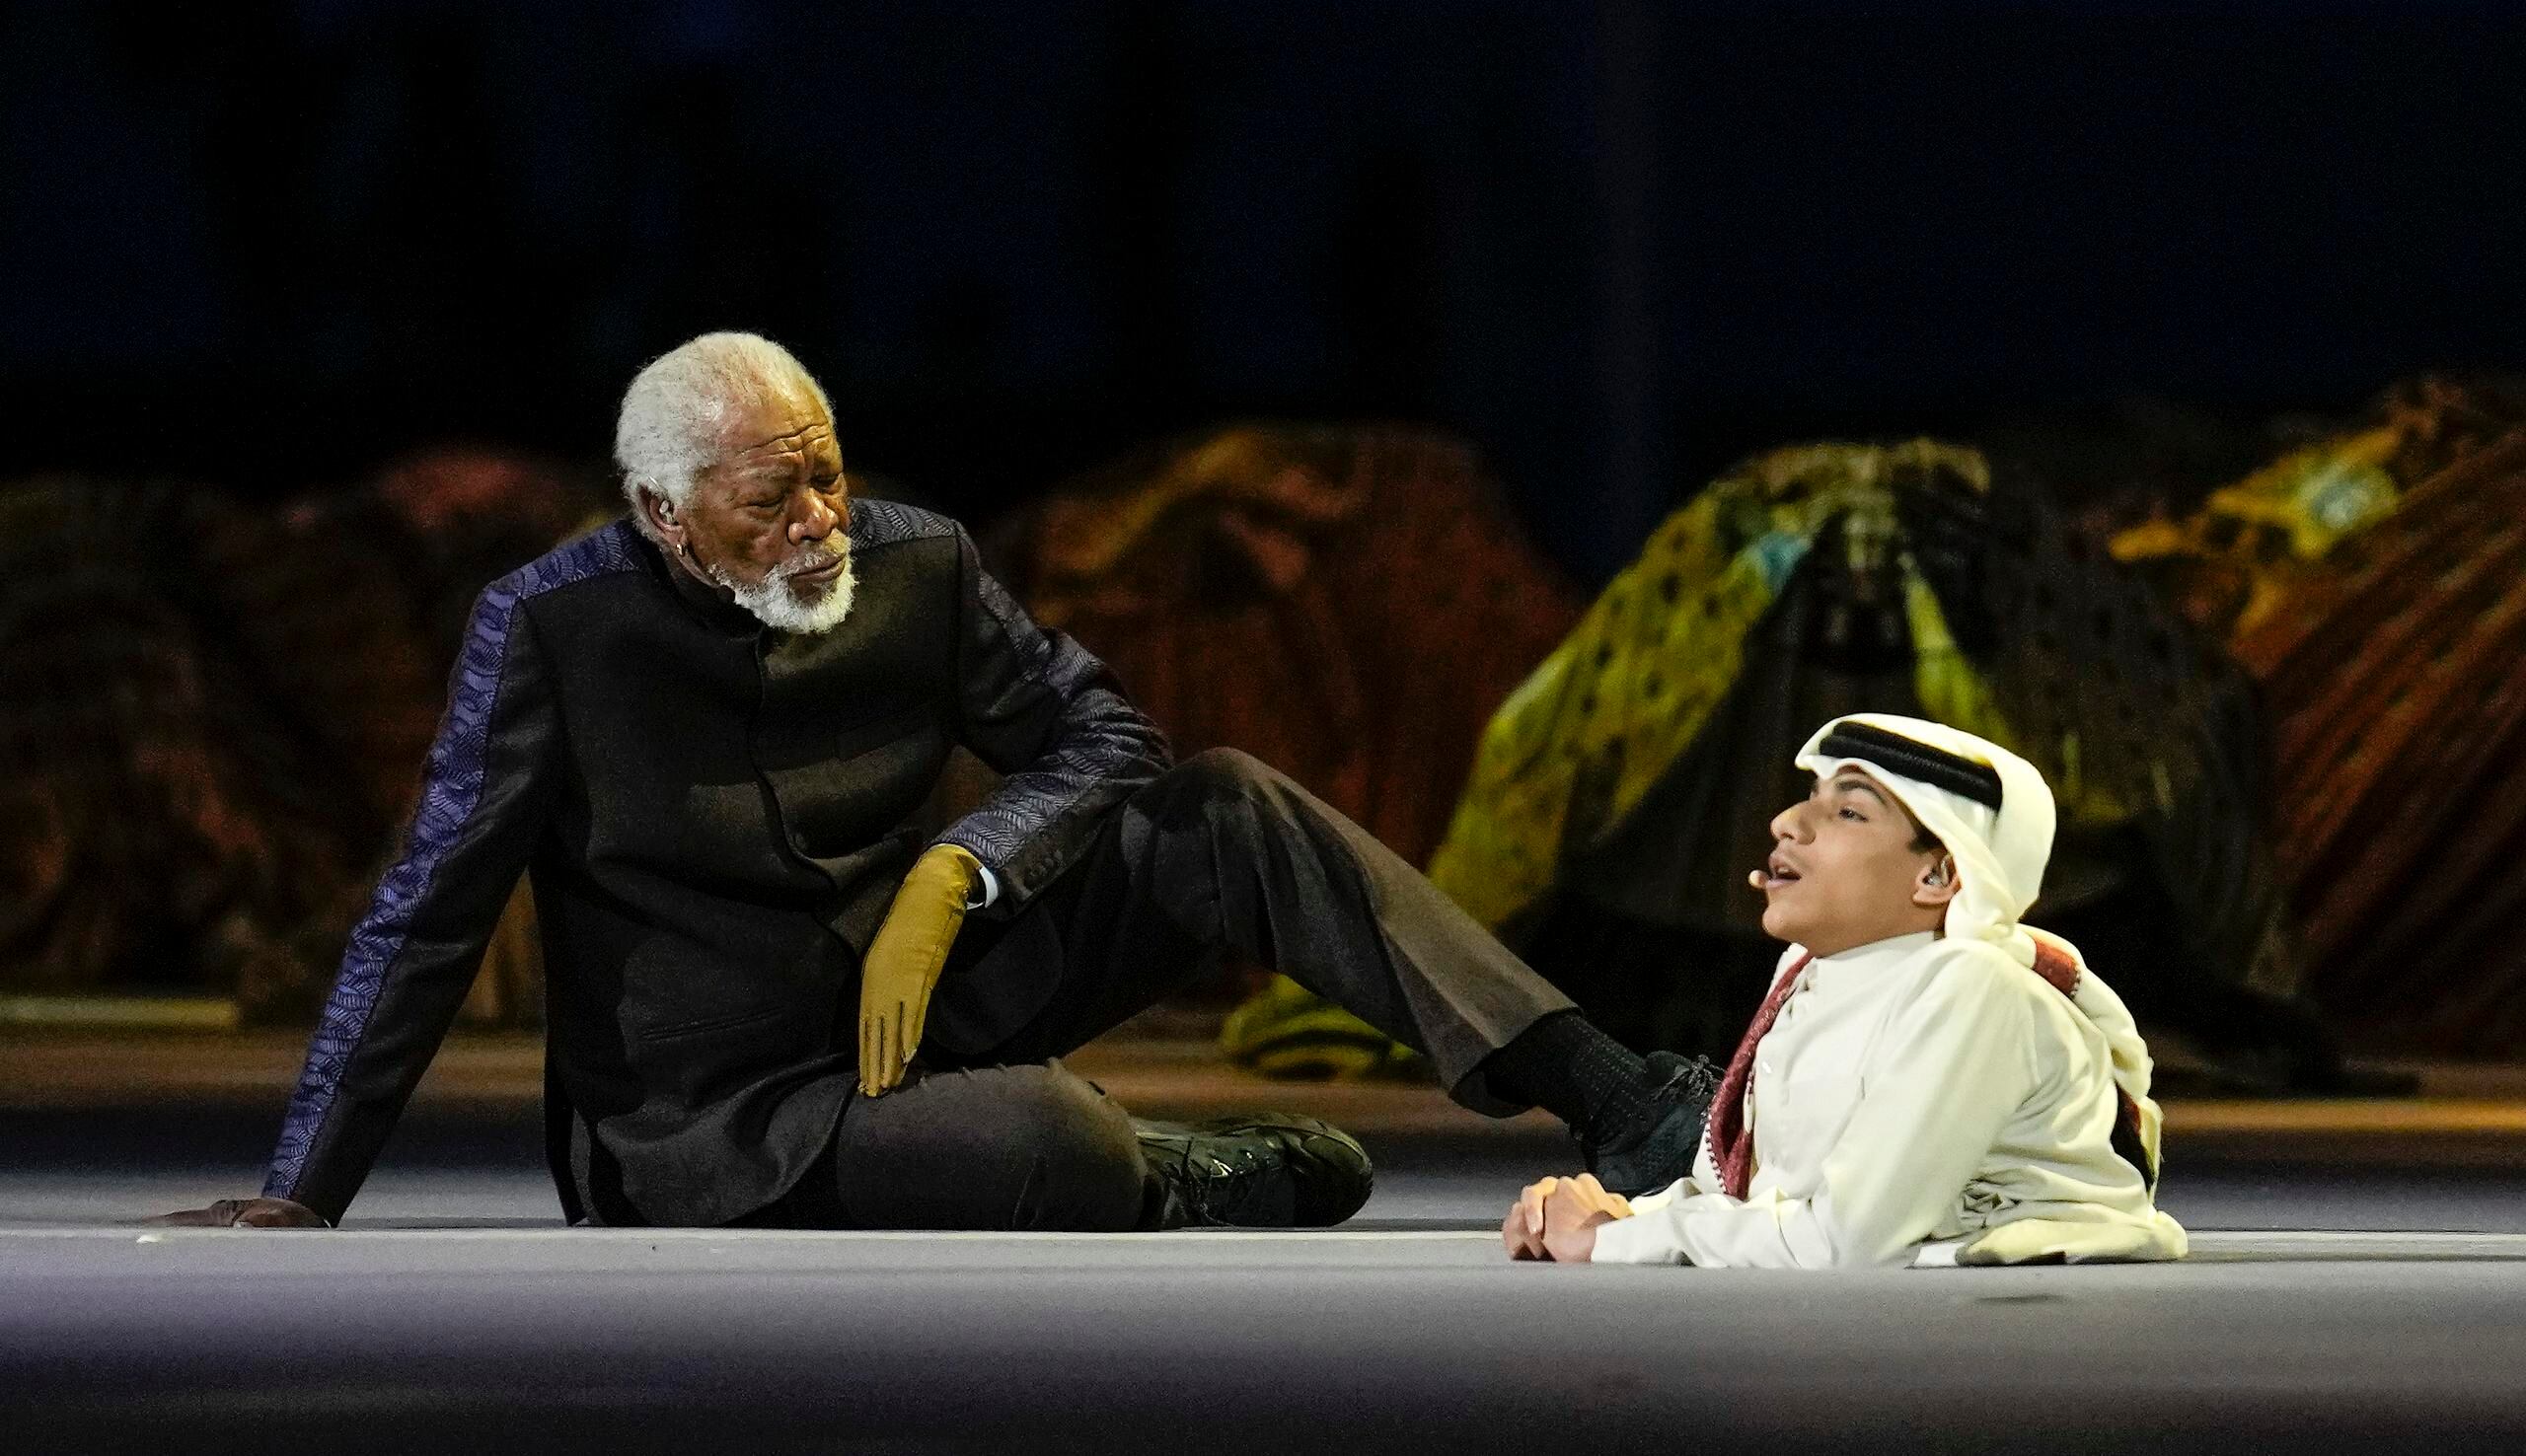 El actor Morgan Freeman (izquierda) sentado en el escenario junto a Ghanim Al Muftah, embajador de la Copa Mundial, durante la ceremonia inaugural del Mundial en el estadio Al Bayt en Jor, Qatar, el domingo 20 de noviembre de 2022. (AP Foto/Natacha Pisarenko)